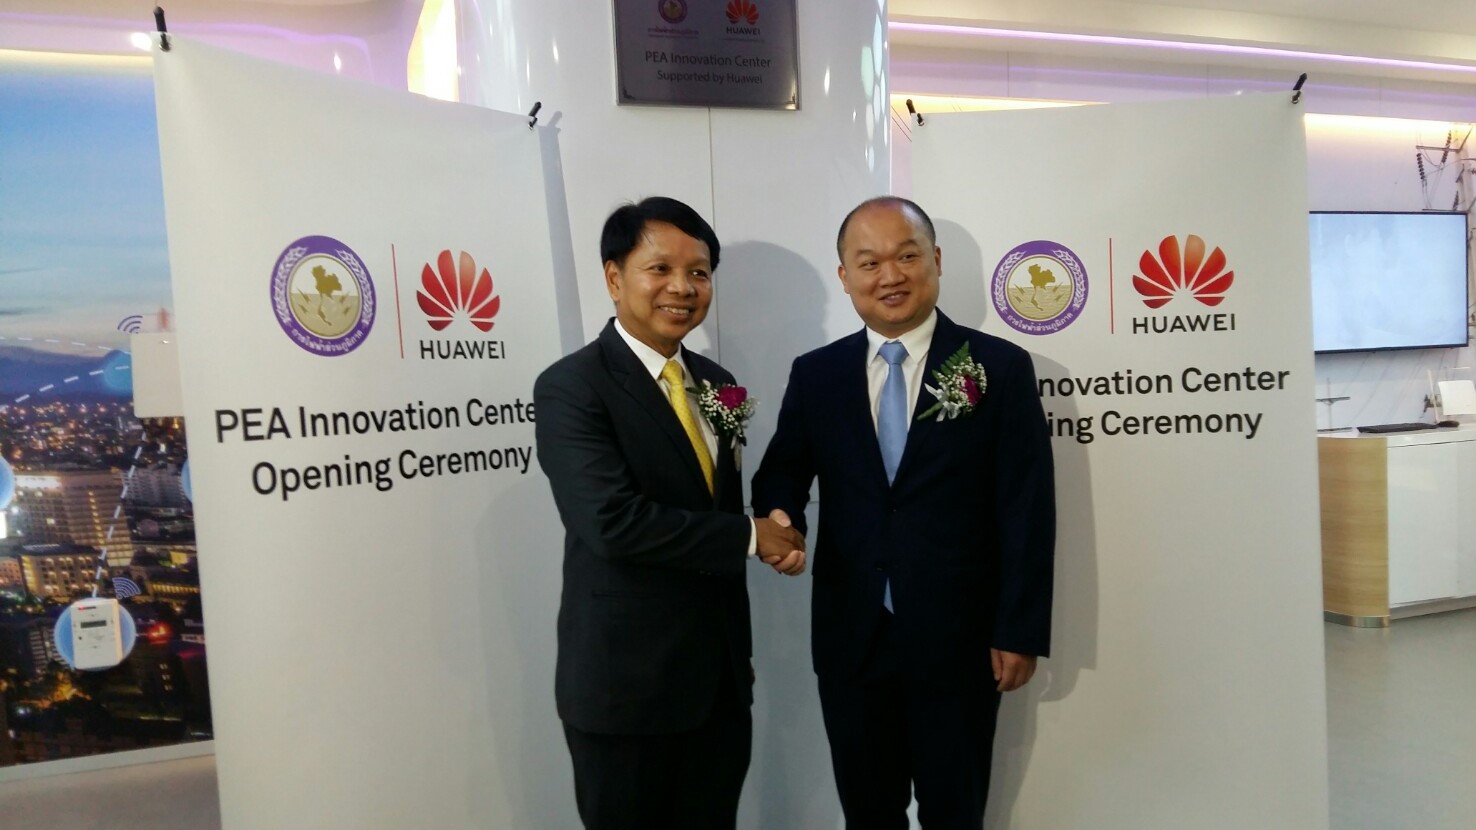 กฟภ. ร่วมกับ หัวเว่ย ประเทศไทย เปิดศุนย์นวัตกรรมด้านพลังงานไฟฟ้าแห่งแรกในประเทศไทย